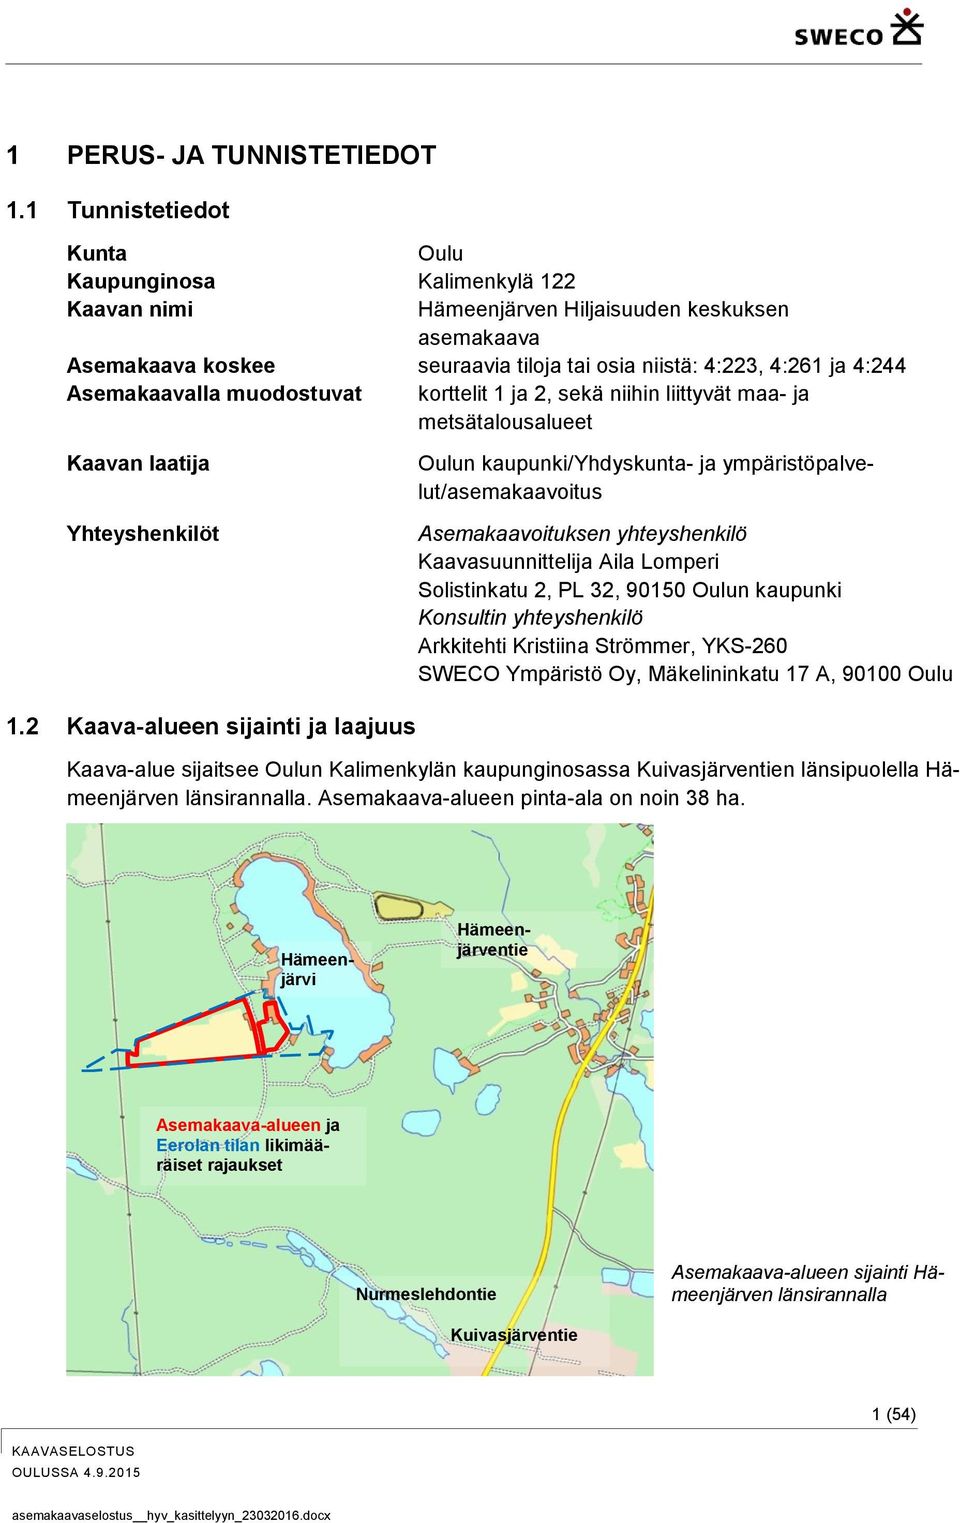 Asemakaavalla muodostuvat korttelit 1 ja 2, sekä niihin liittyvät maa- ja metsätalousalueet Kaavan laatija Yhteyshenkilöt Oulun kaupunki/yhdyskunta- ja ympäristöpalvelut/asemakaavoitus